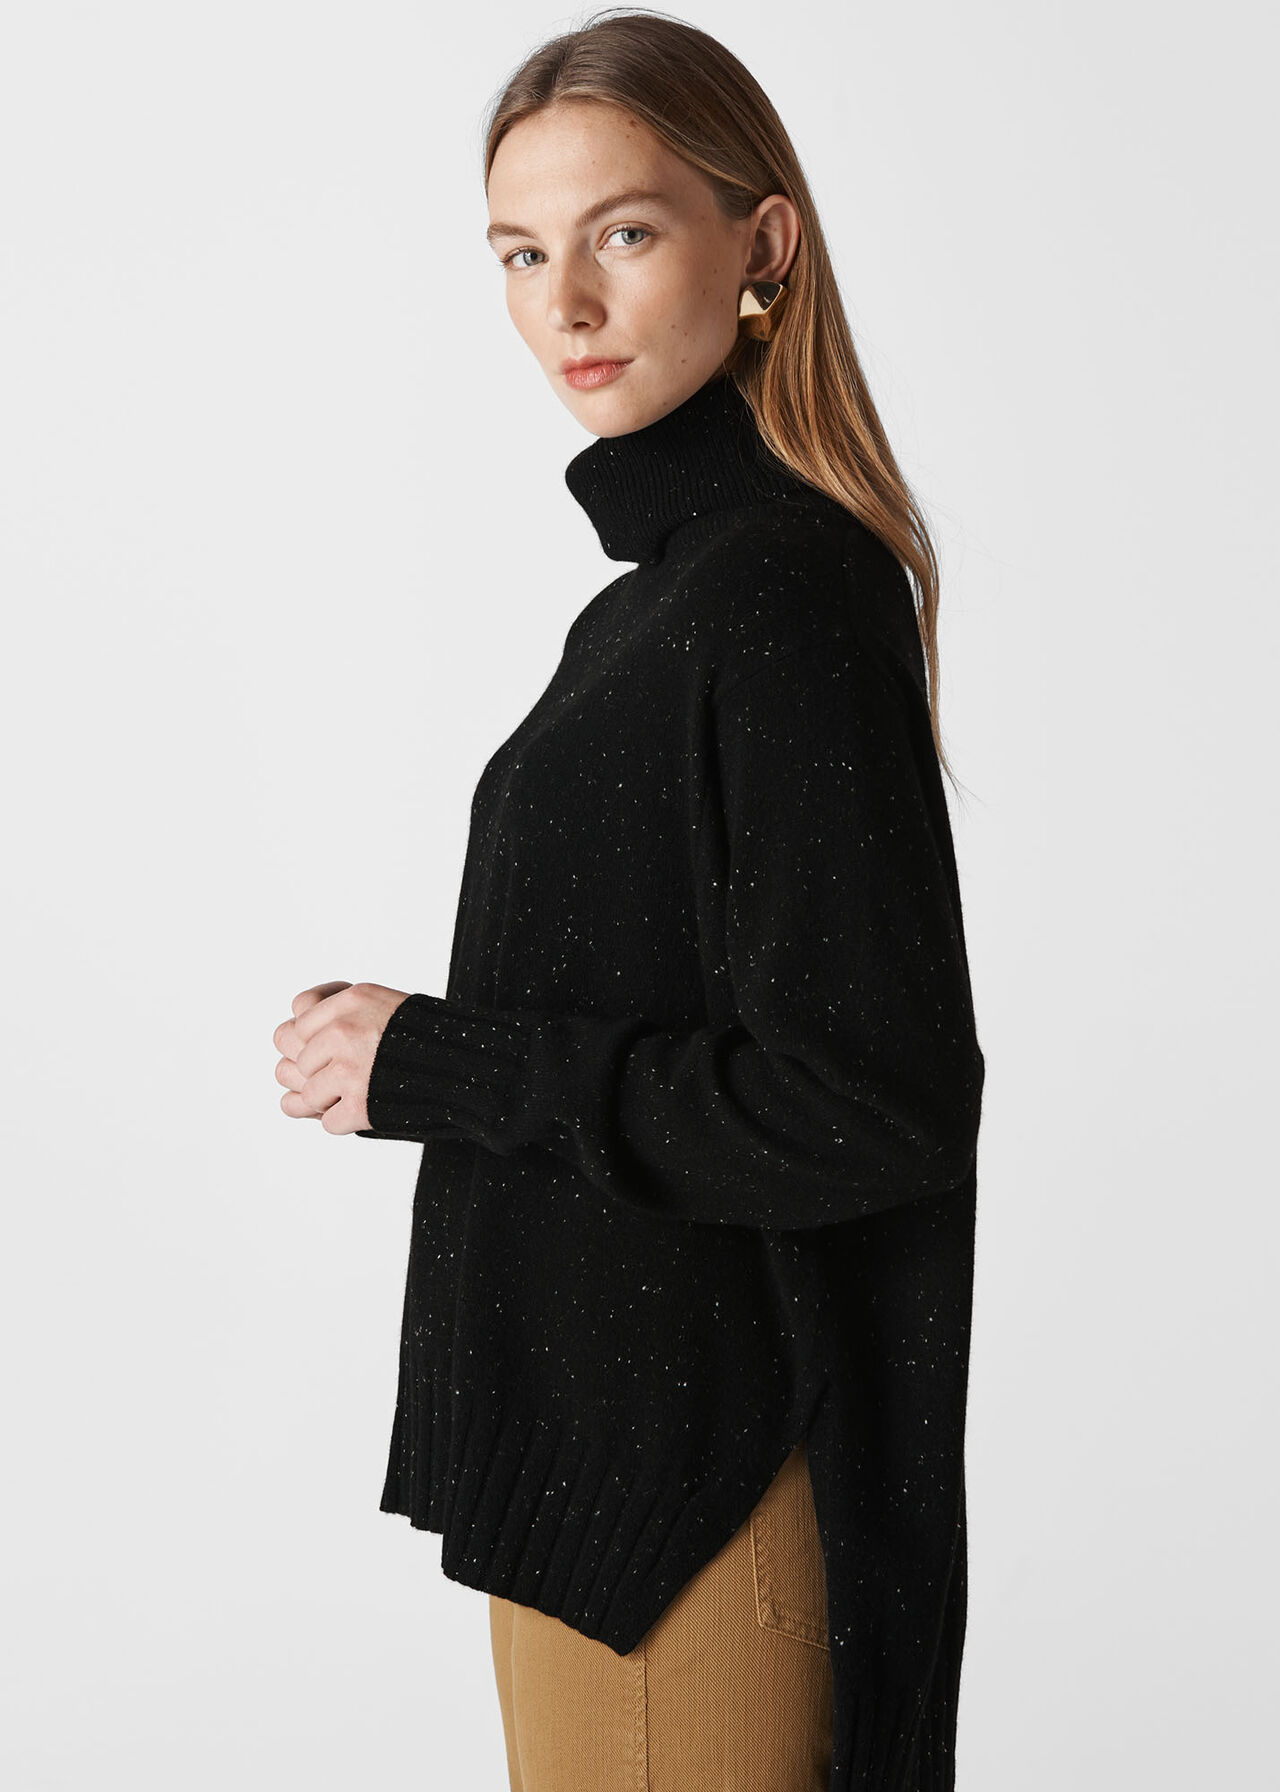 Cashmere Roll Neck Sweater Black/Multi